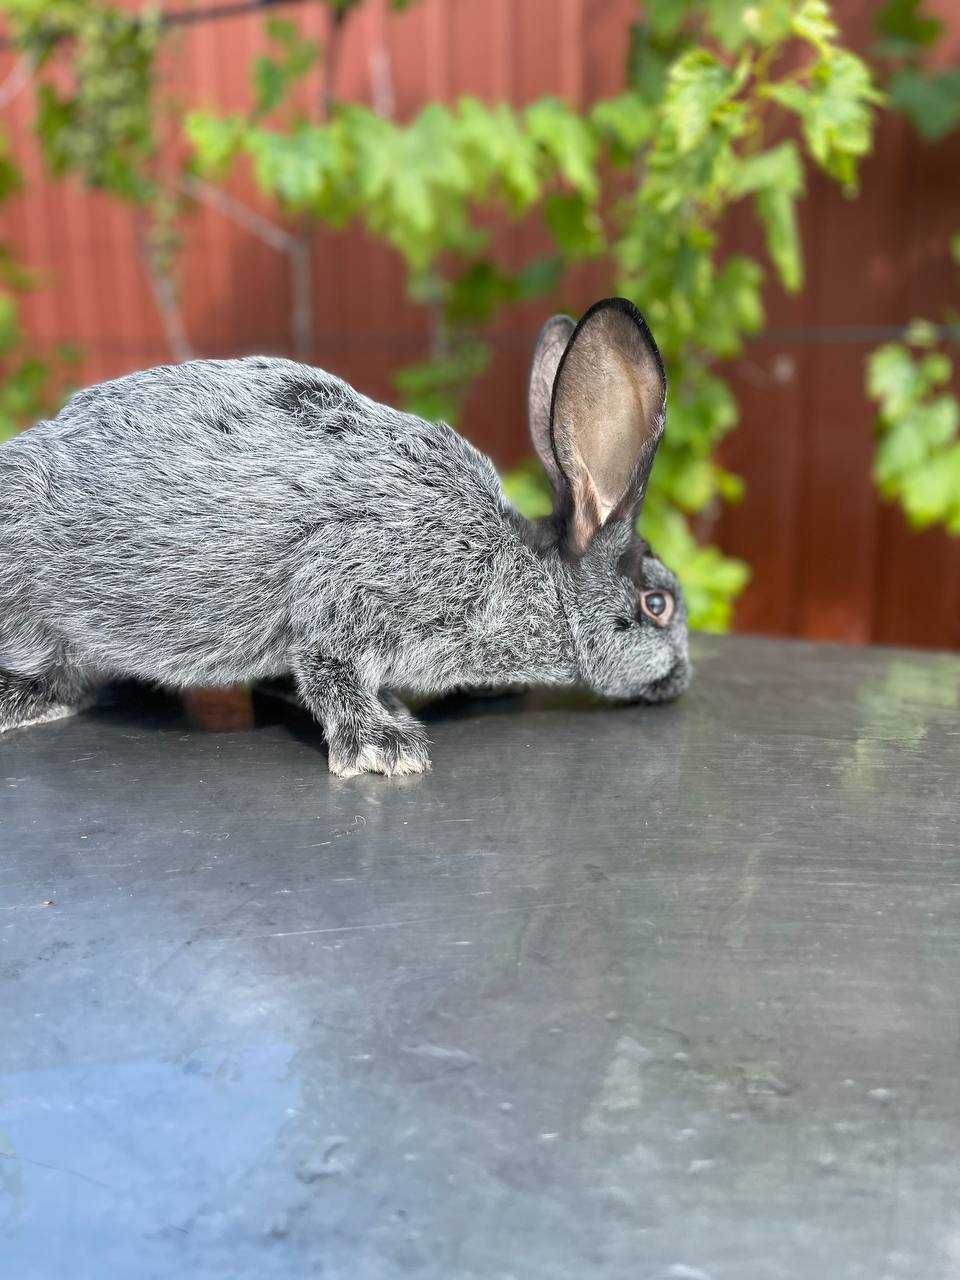 Продам кролика Полтавське срібло. Вага кроля від 2 кг